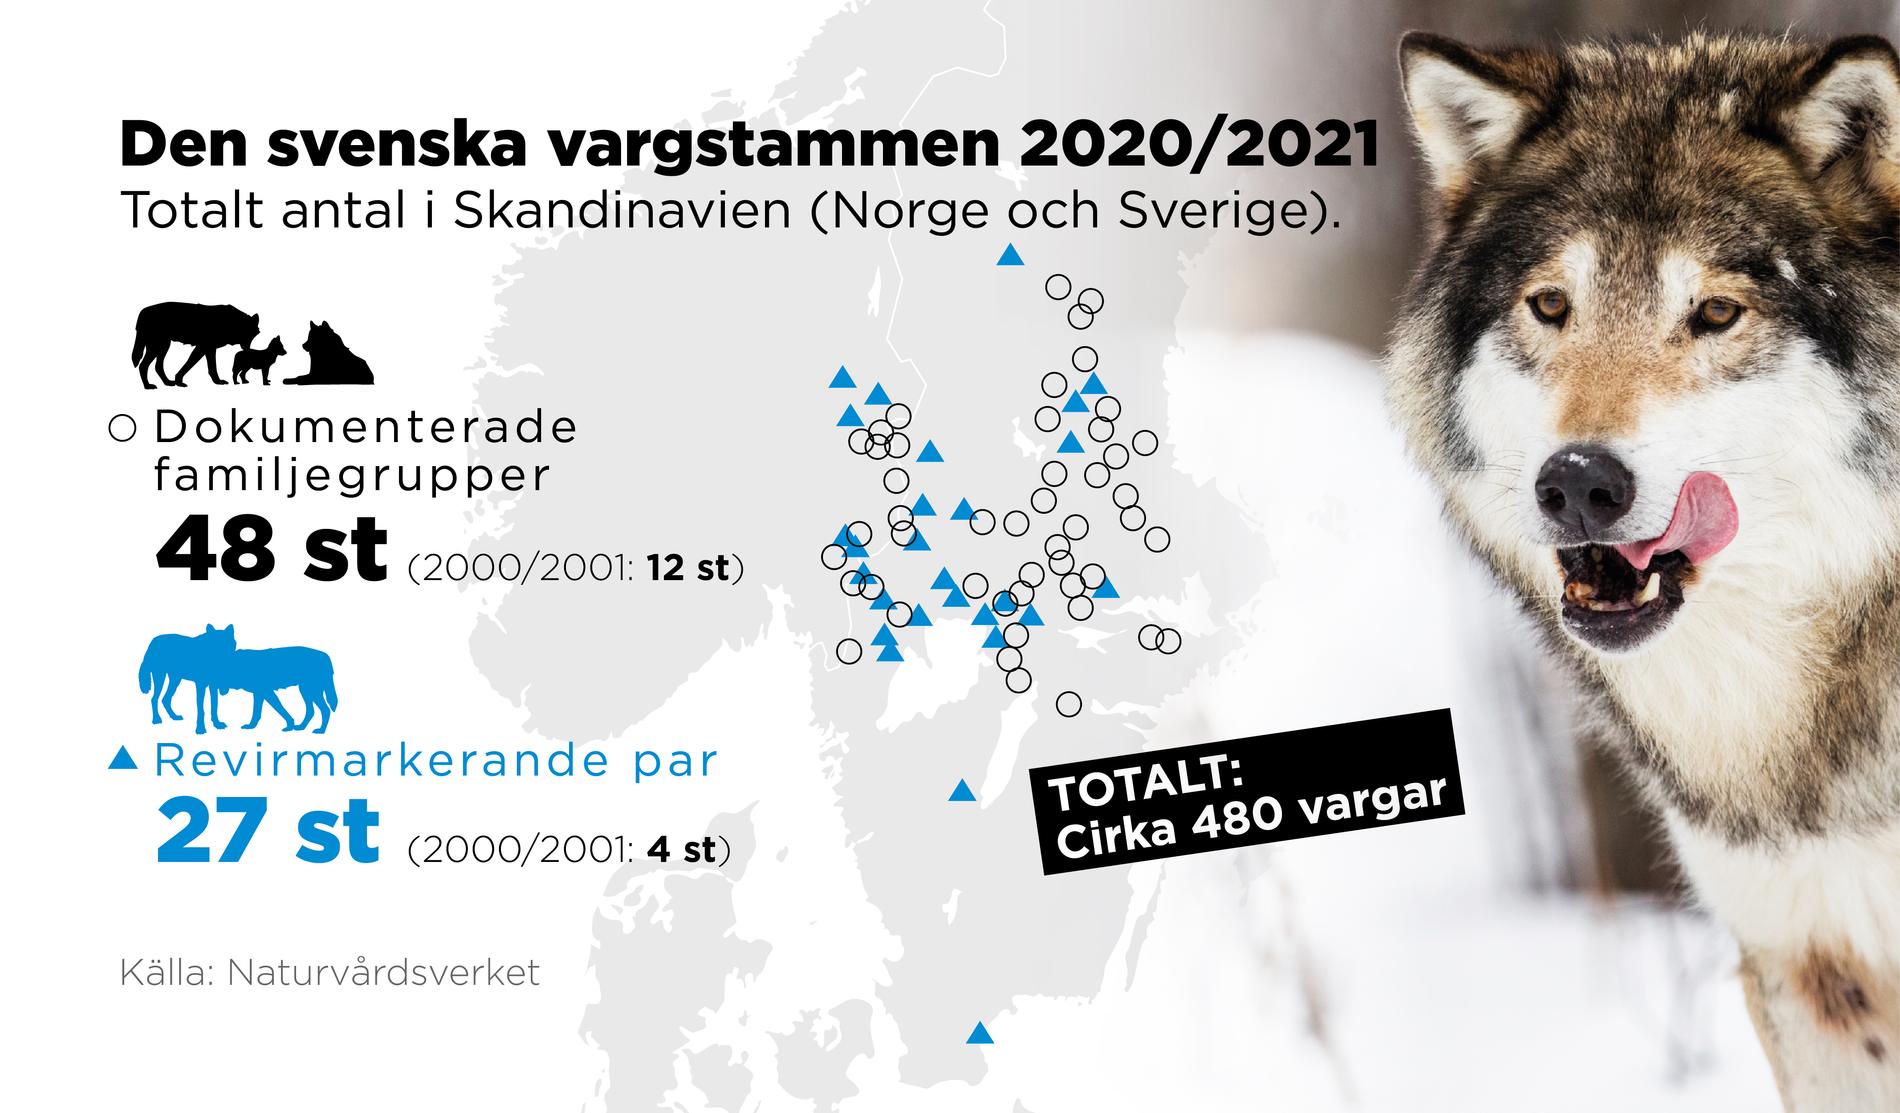 Totalt antal vargar i Skandinavien (Norge och Sverige).